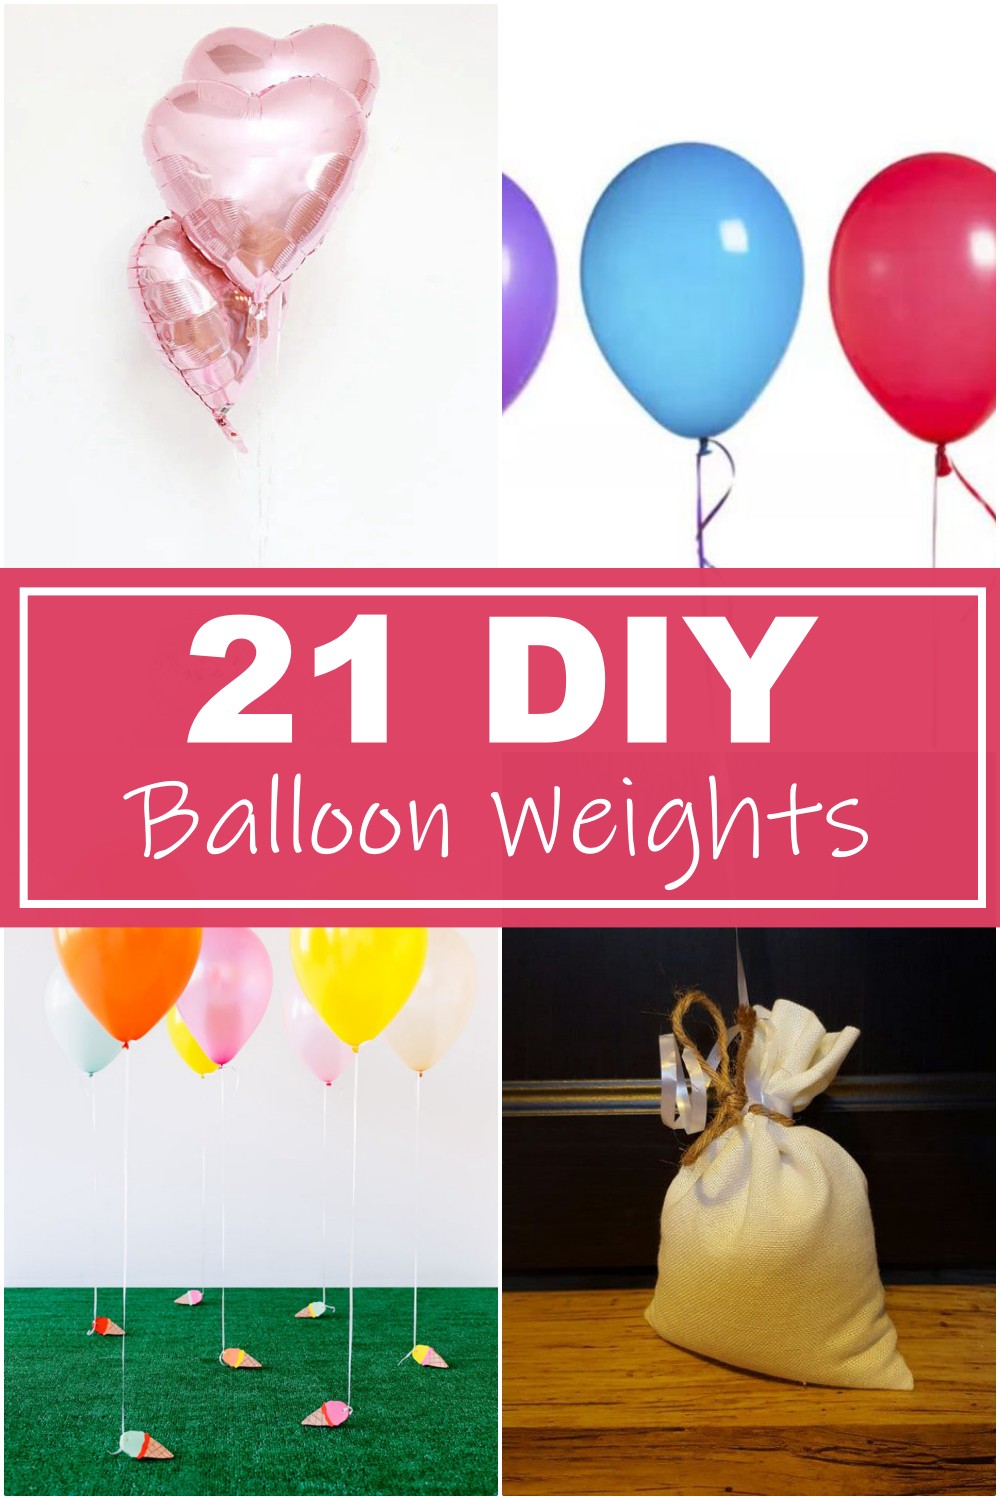 21 DIY Balloon Weights